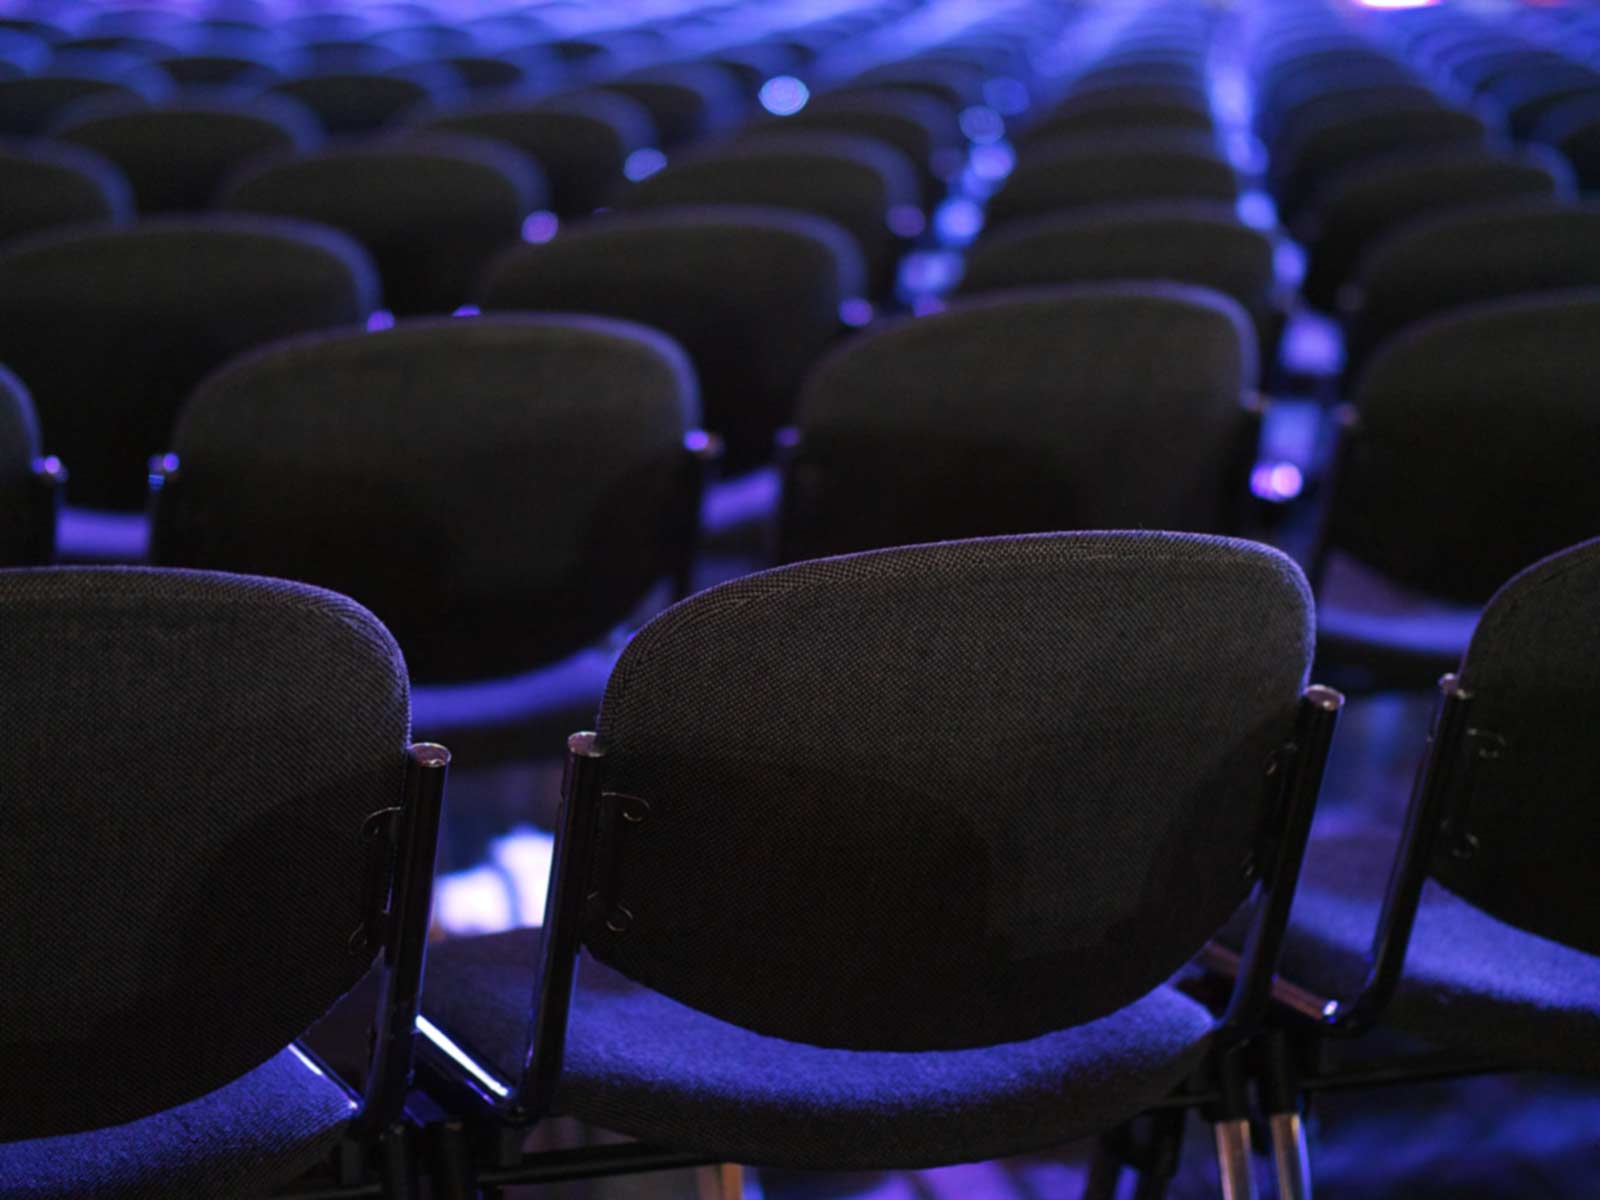 Chairs in Auditorium